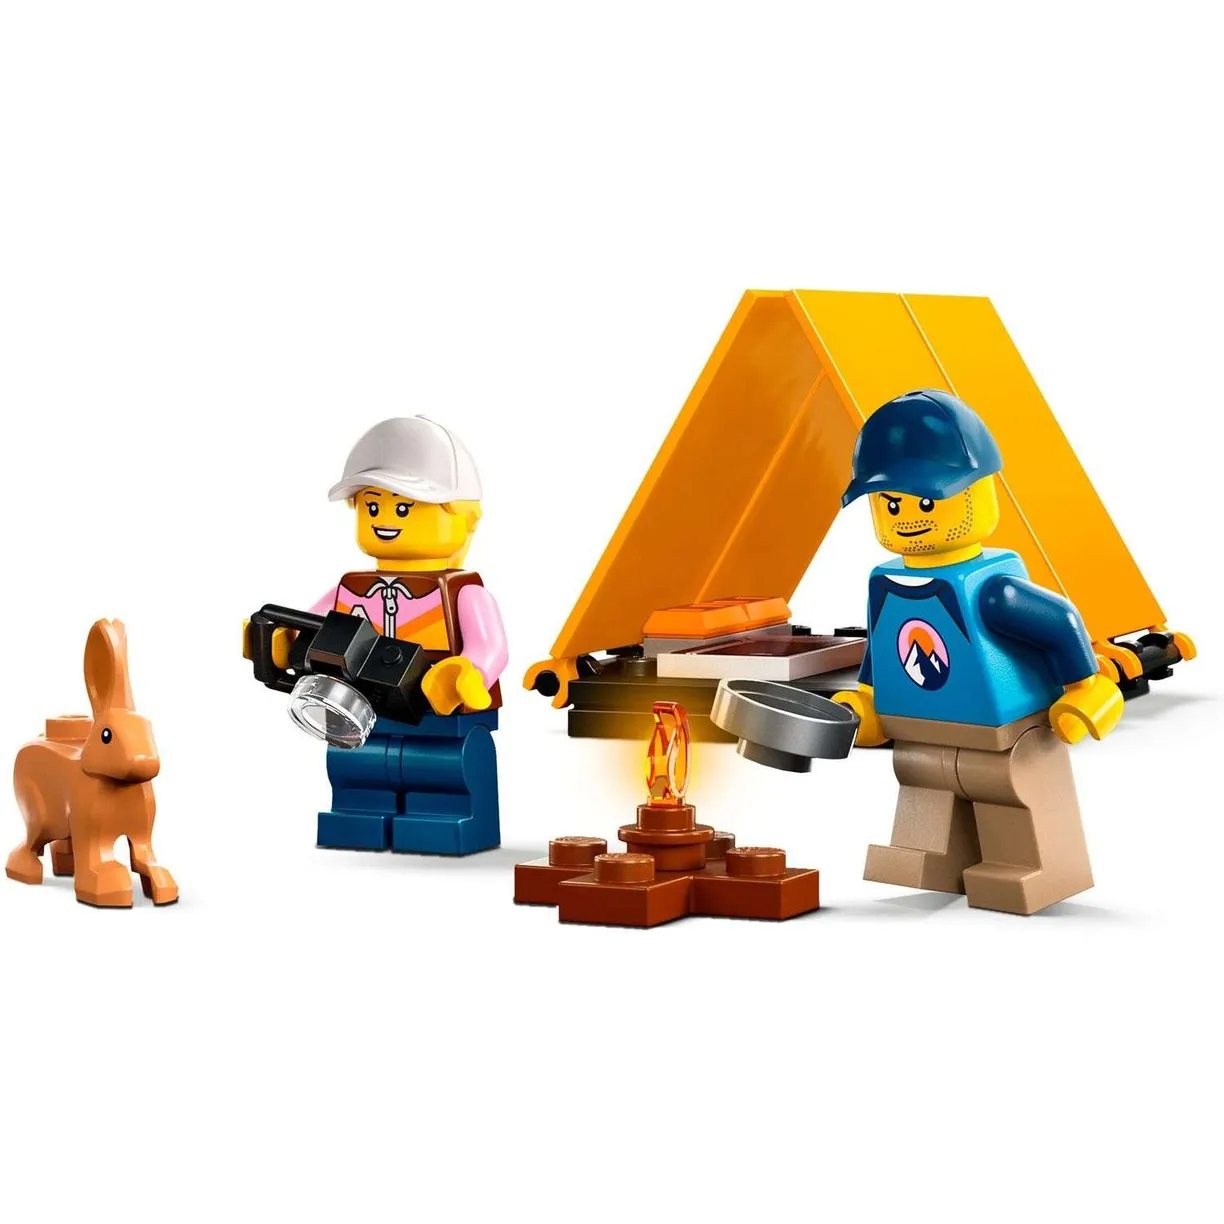 Lego City 60387 Приключения на внедорожнике 4x4